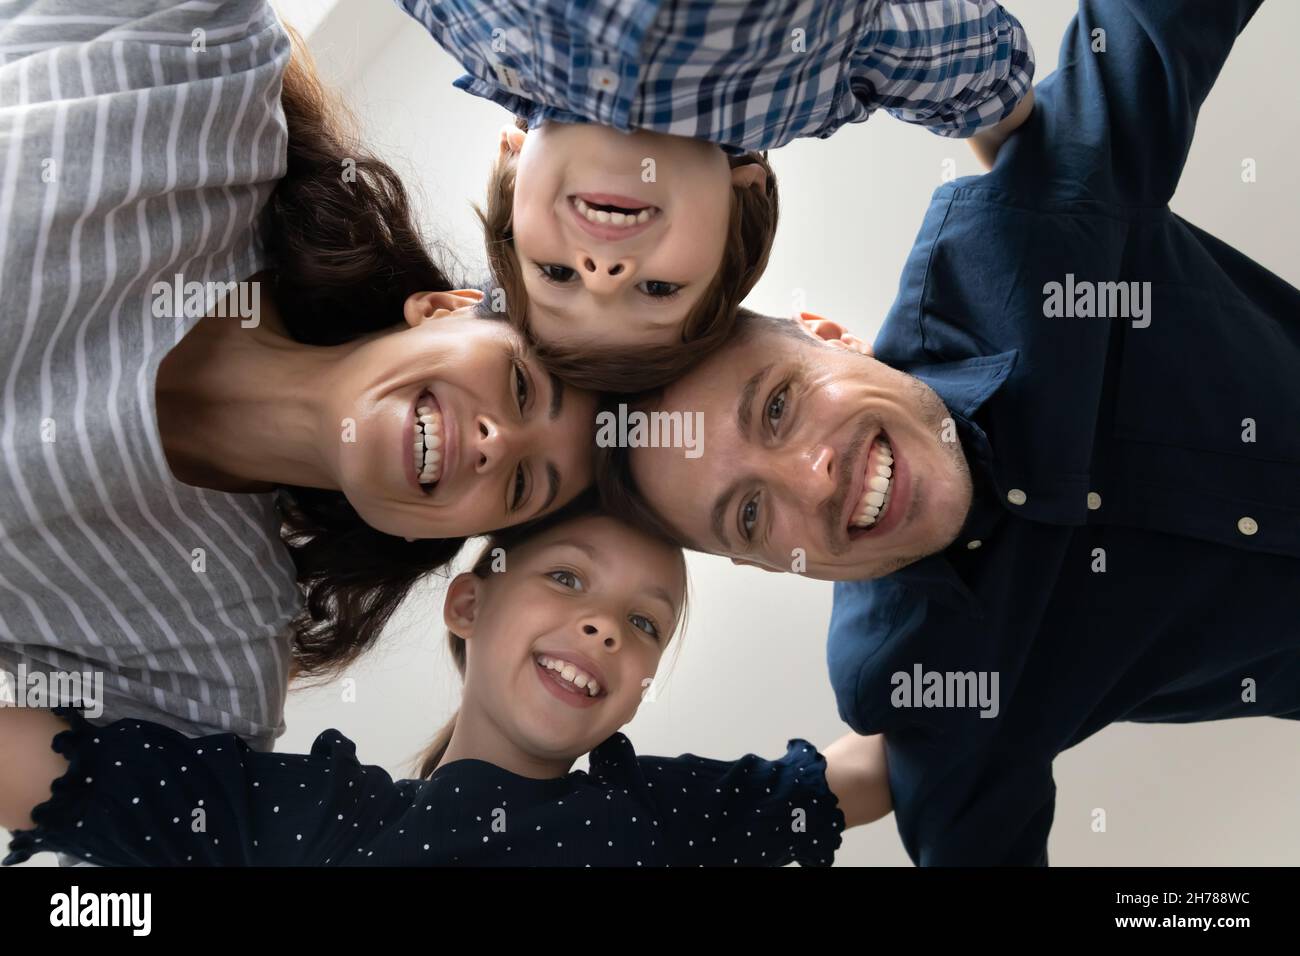 La vue de dessous fait face à la famille avec les enfants souriant en regardant l'appareil photo Banque D'Images